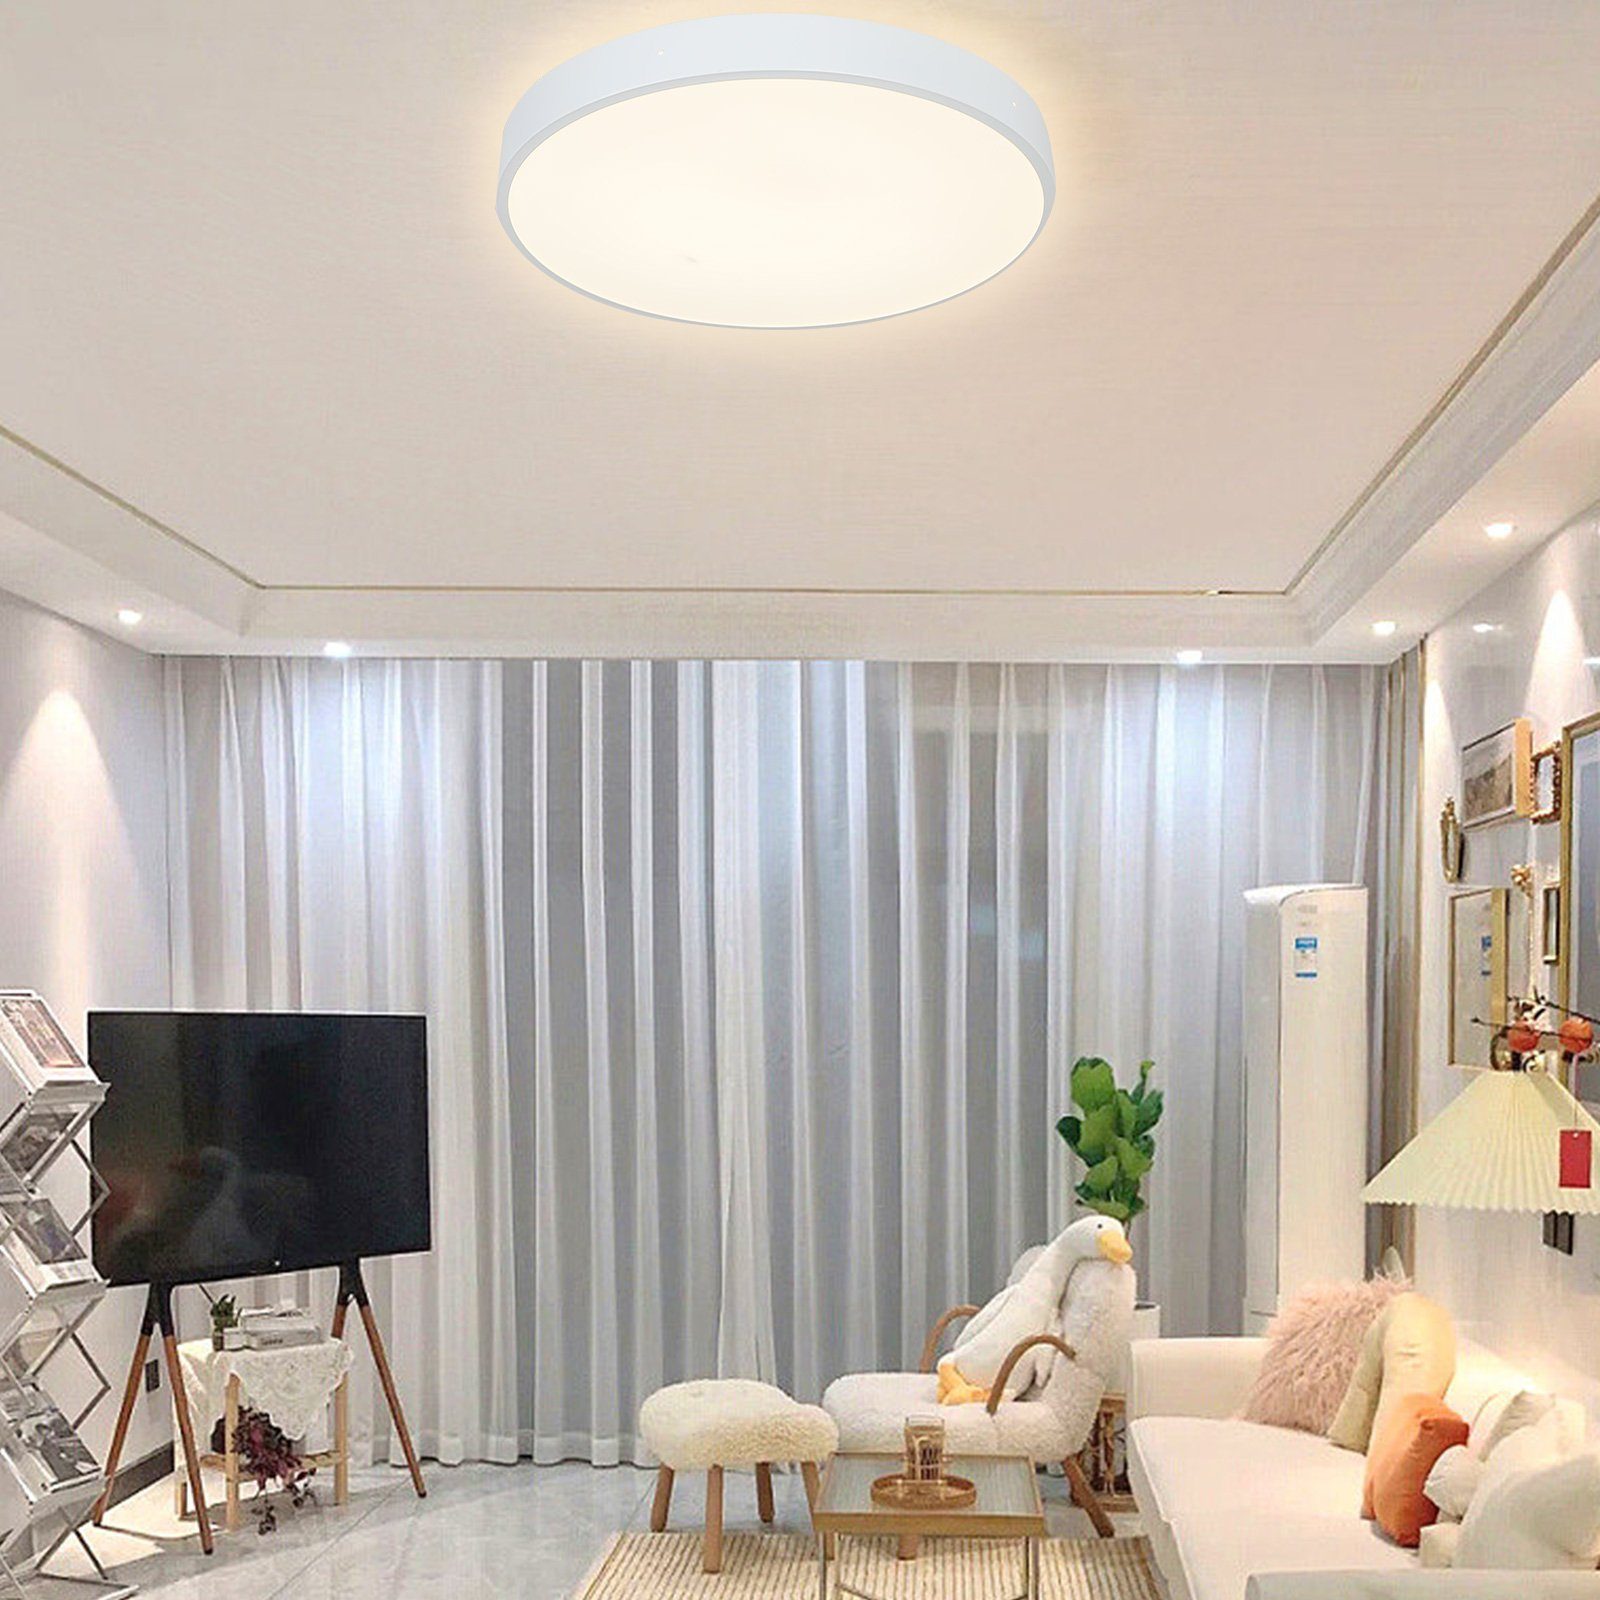 Ø30*4cm, Deckenlampe Schlafzimmer für Warmweiß Leuchte, home Runde LED Deckenleuchte Wohnzimmer 3000K, Weiß, fest style 24W, integriert, Küche